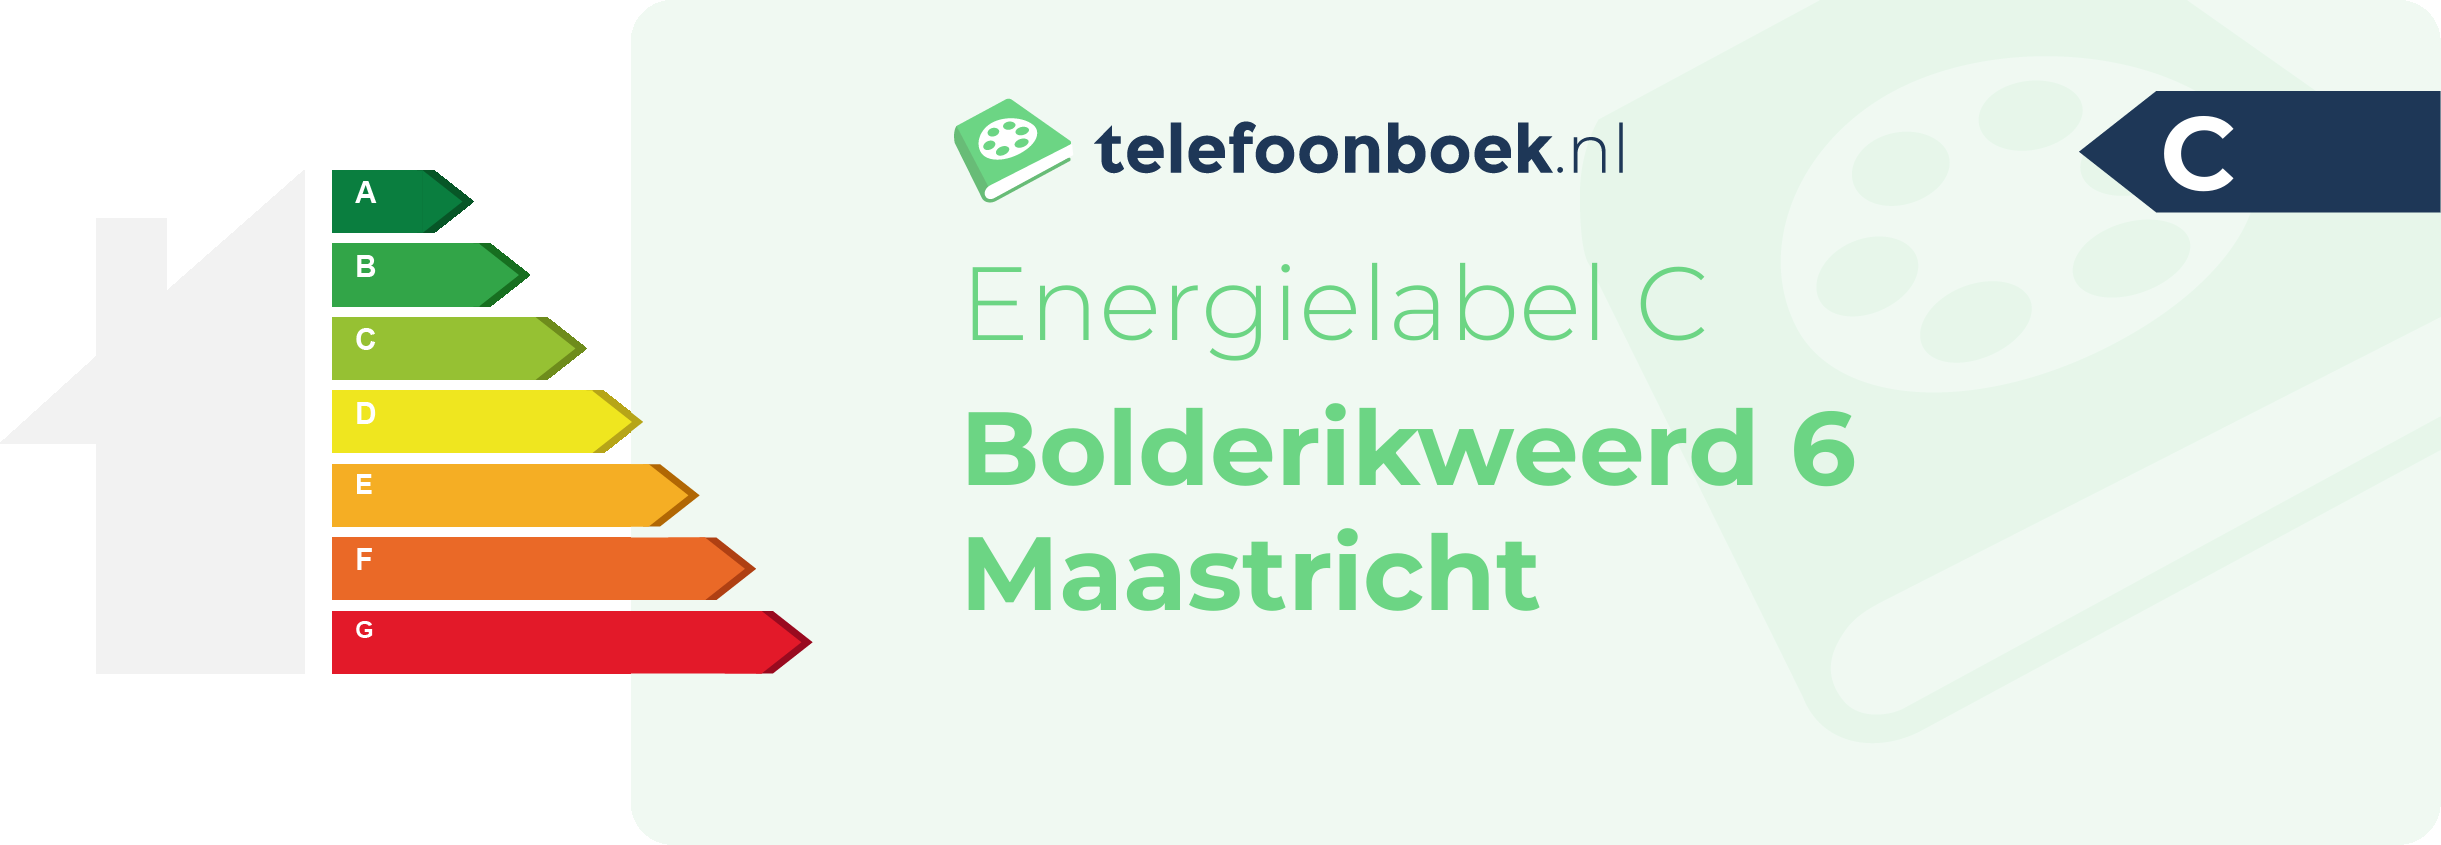 Energielabel Bolderikweerd 6 Maastricht